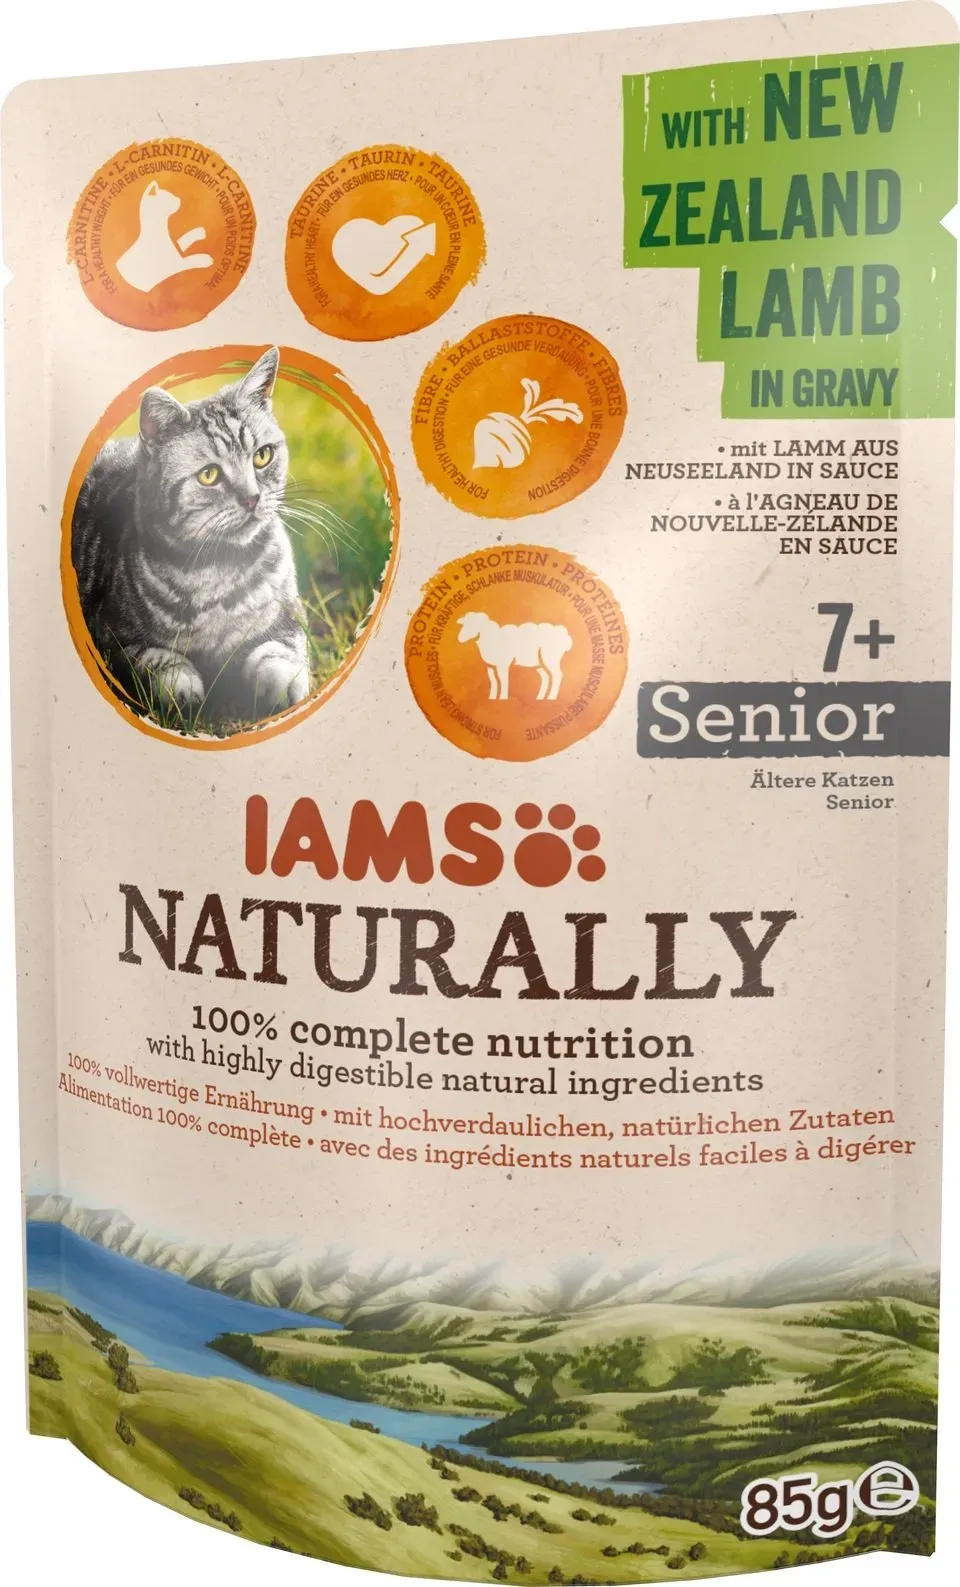 IAMS Naturally Senior mit Lamm aus Neuseeland in Sauce 85g